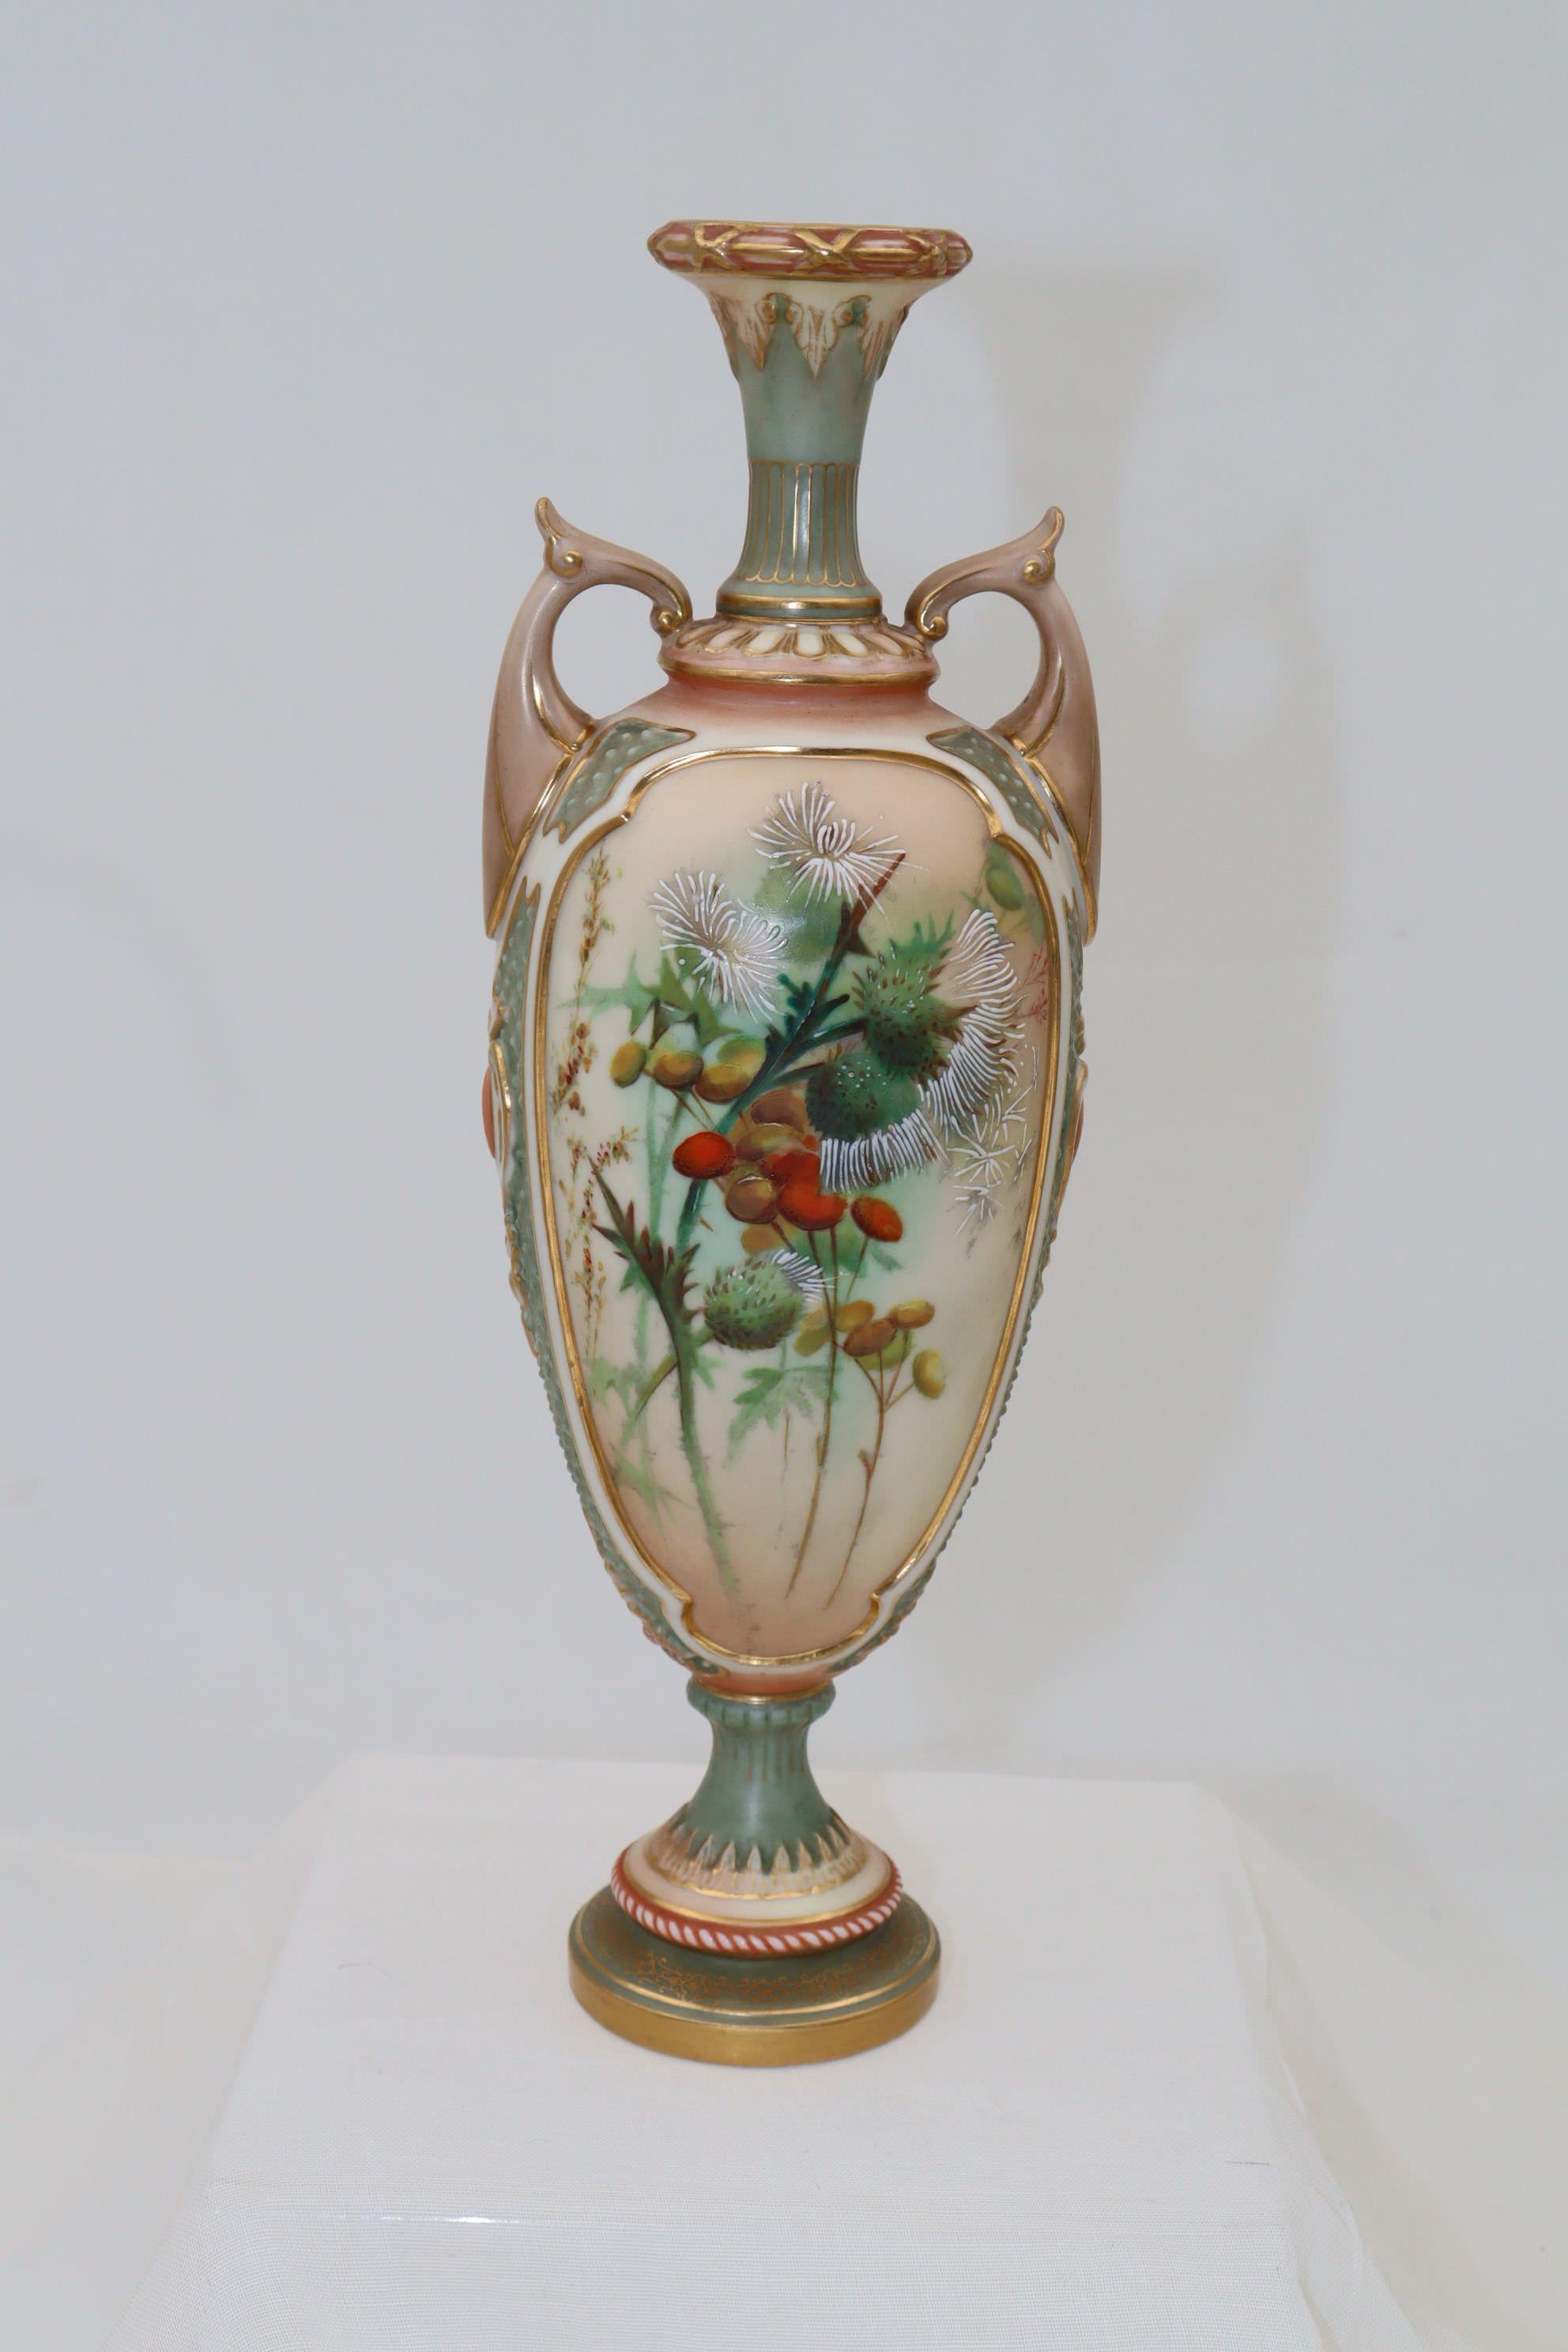 L'avant de ce vase en porcelaine Royal Worcester est orné d'une gerbe de chardons et d'autres fleurs peints à la main dans le style d'Edward Raby junior. Raby (né en 1863) a travaillé au Royal Worcester de 1875 à 1896 et a été l'un des principaux